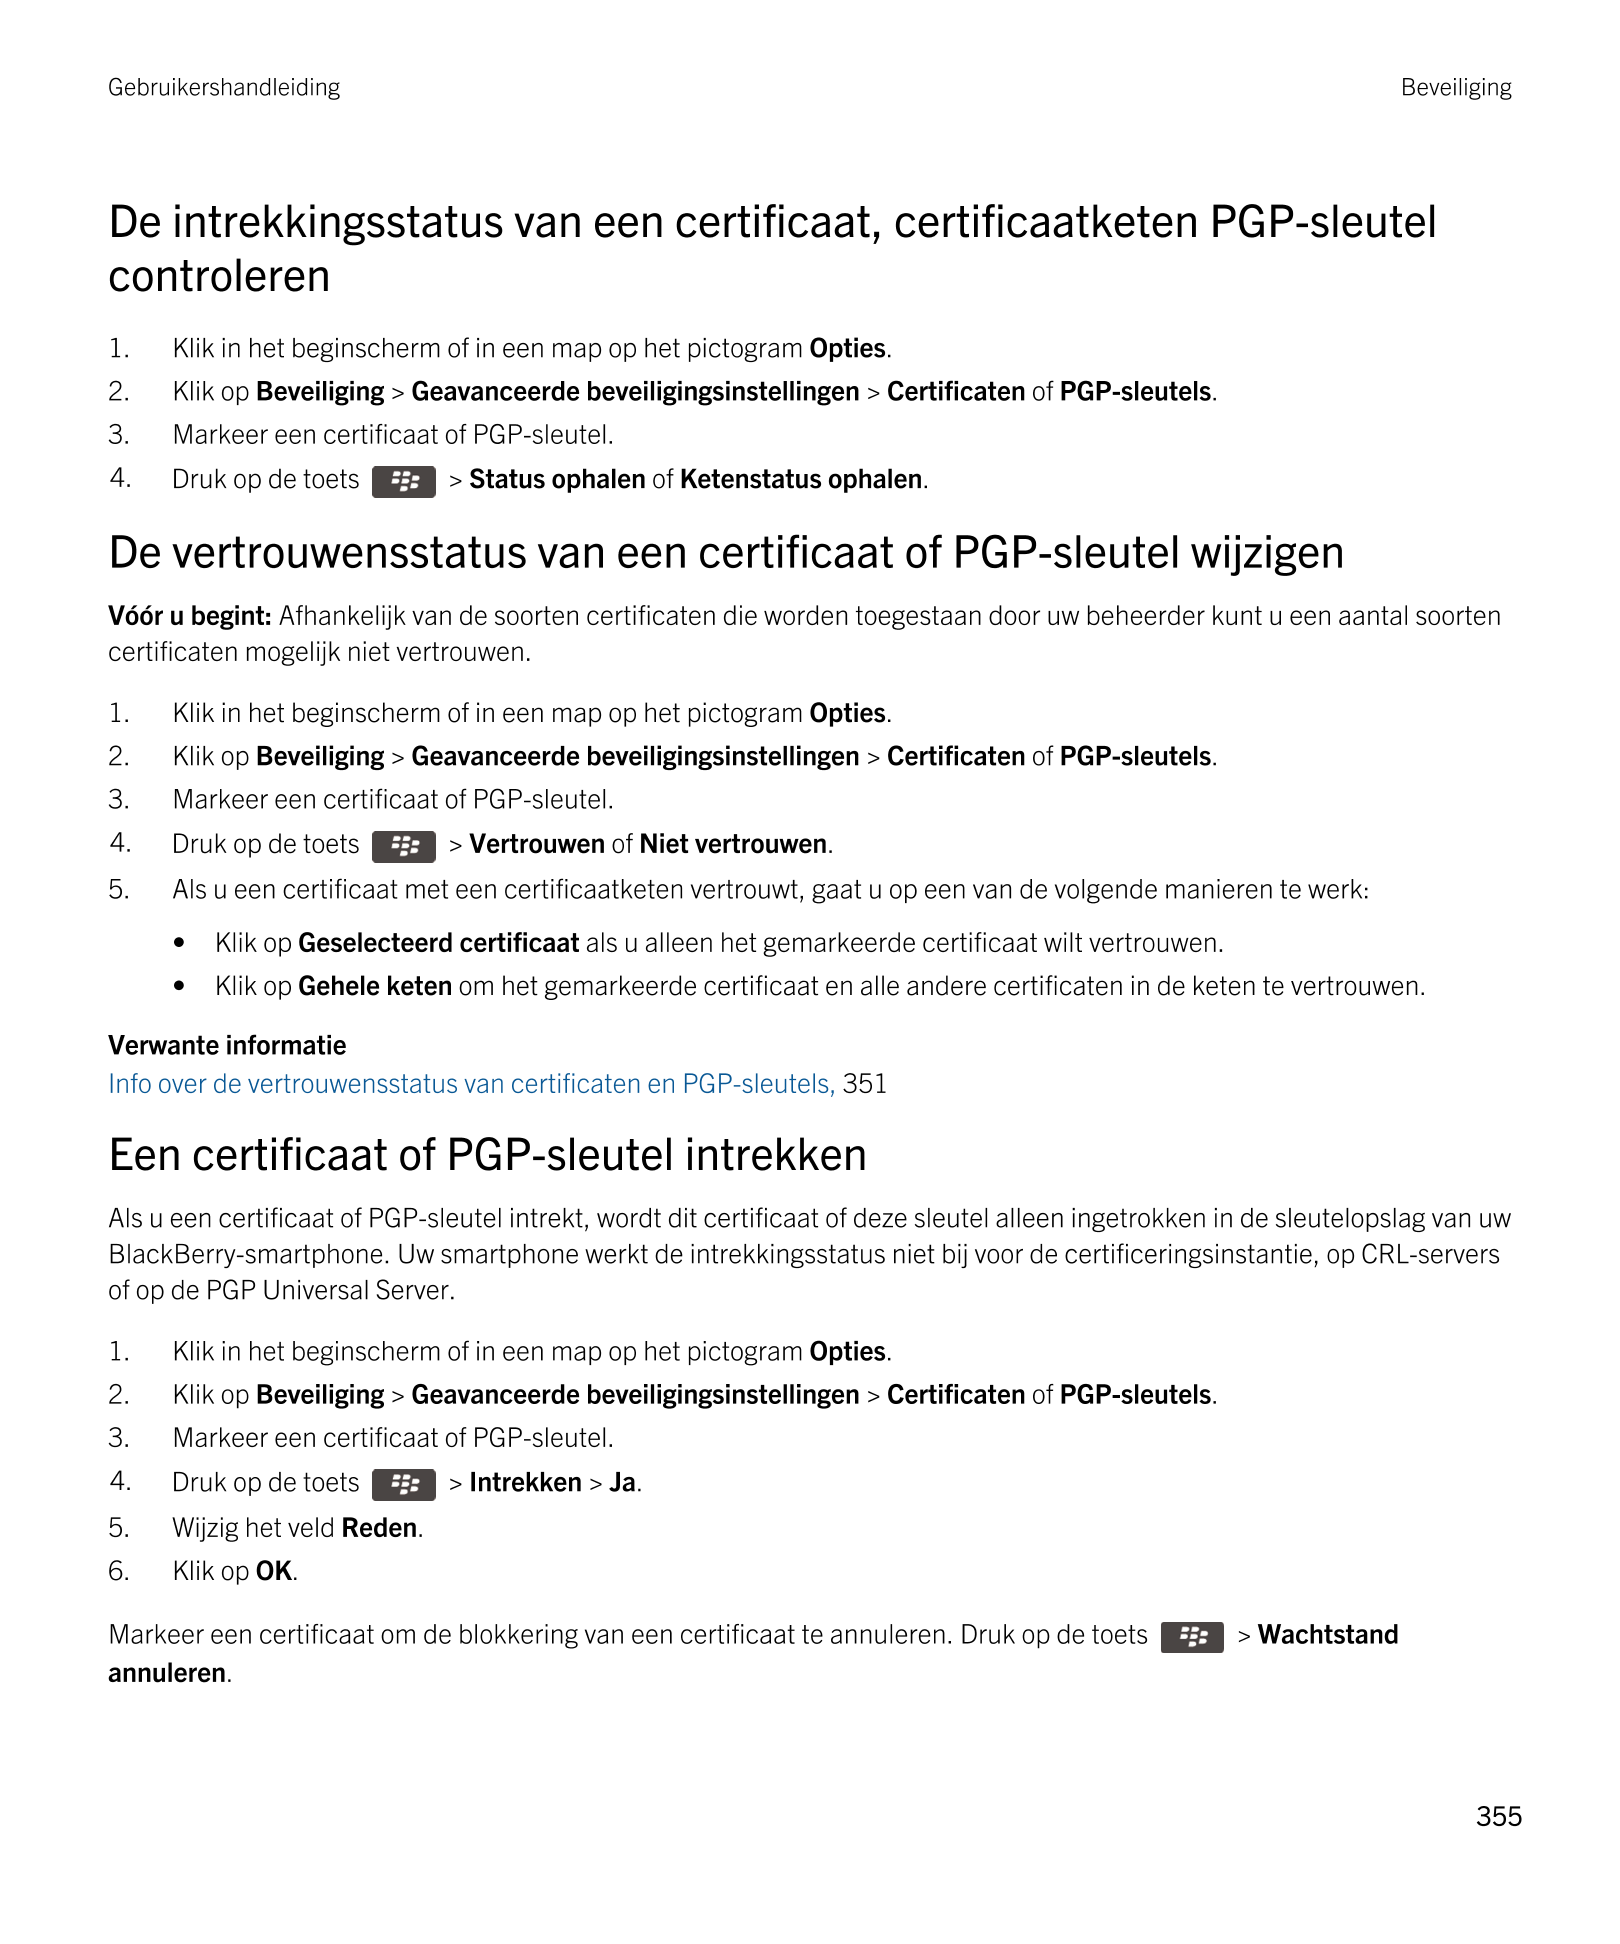 Gebruikershandleiding Beveiliging
De intrekkingsstatus van een certificaat, certificaatketen  PGP-sleutel 
controleren
1. Klik i